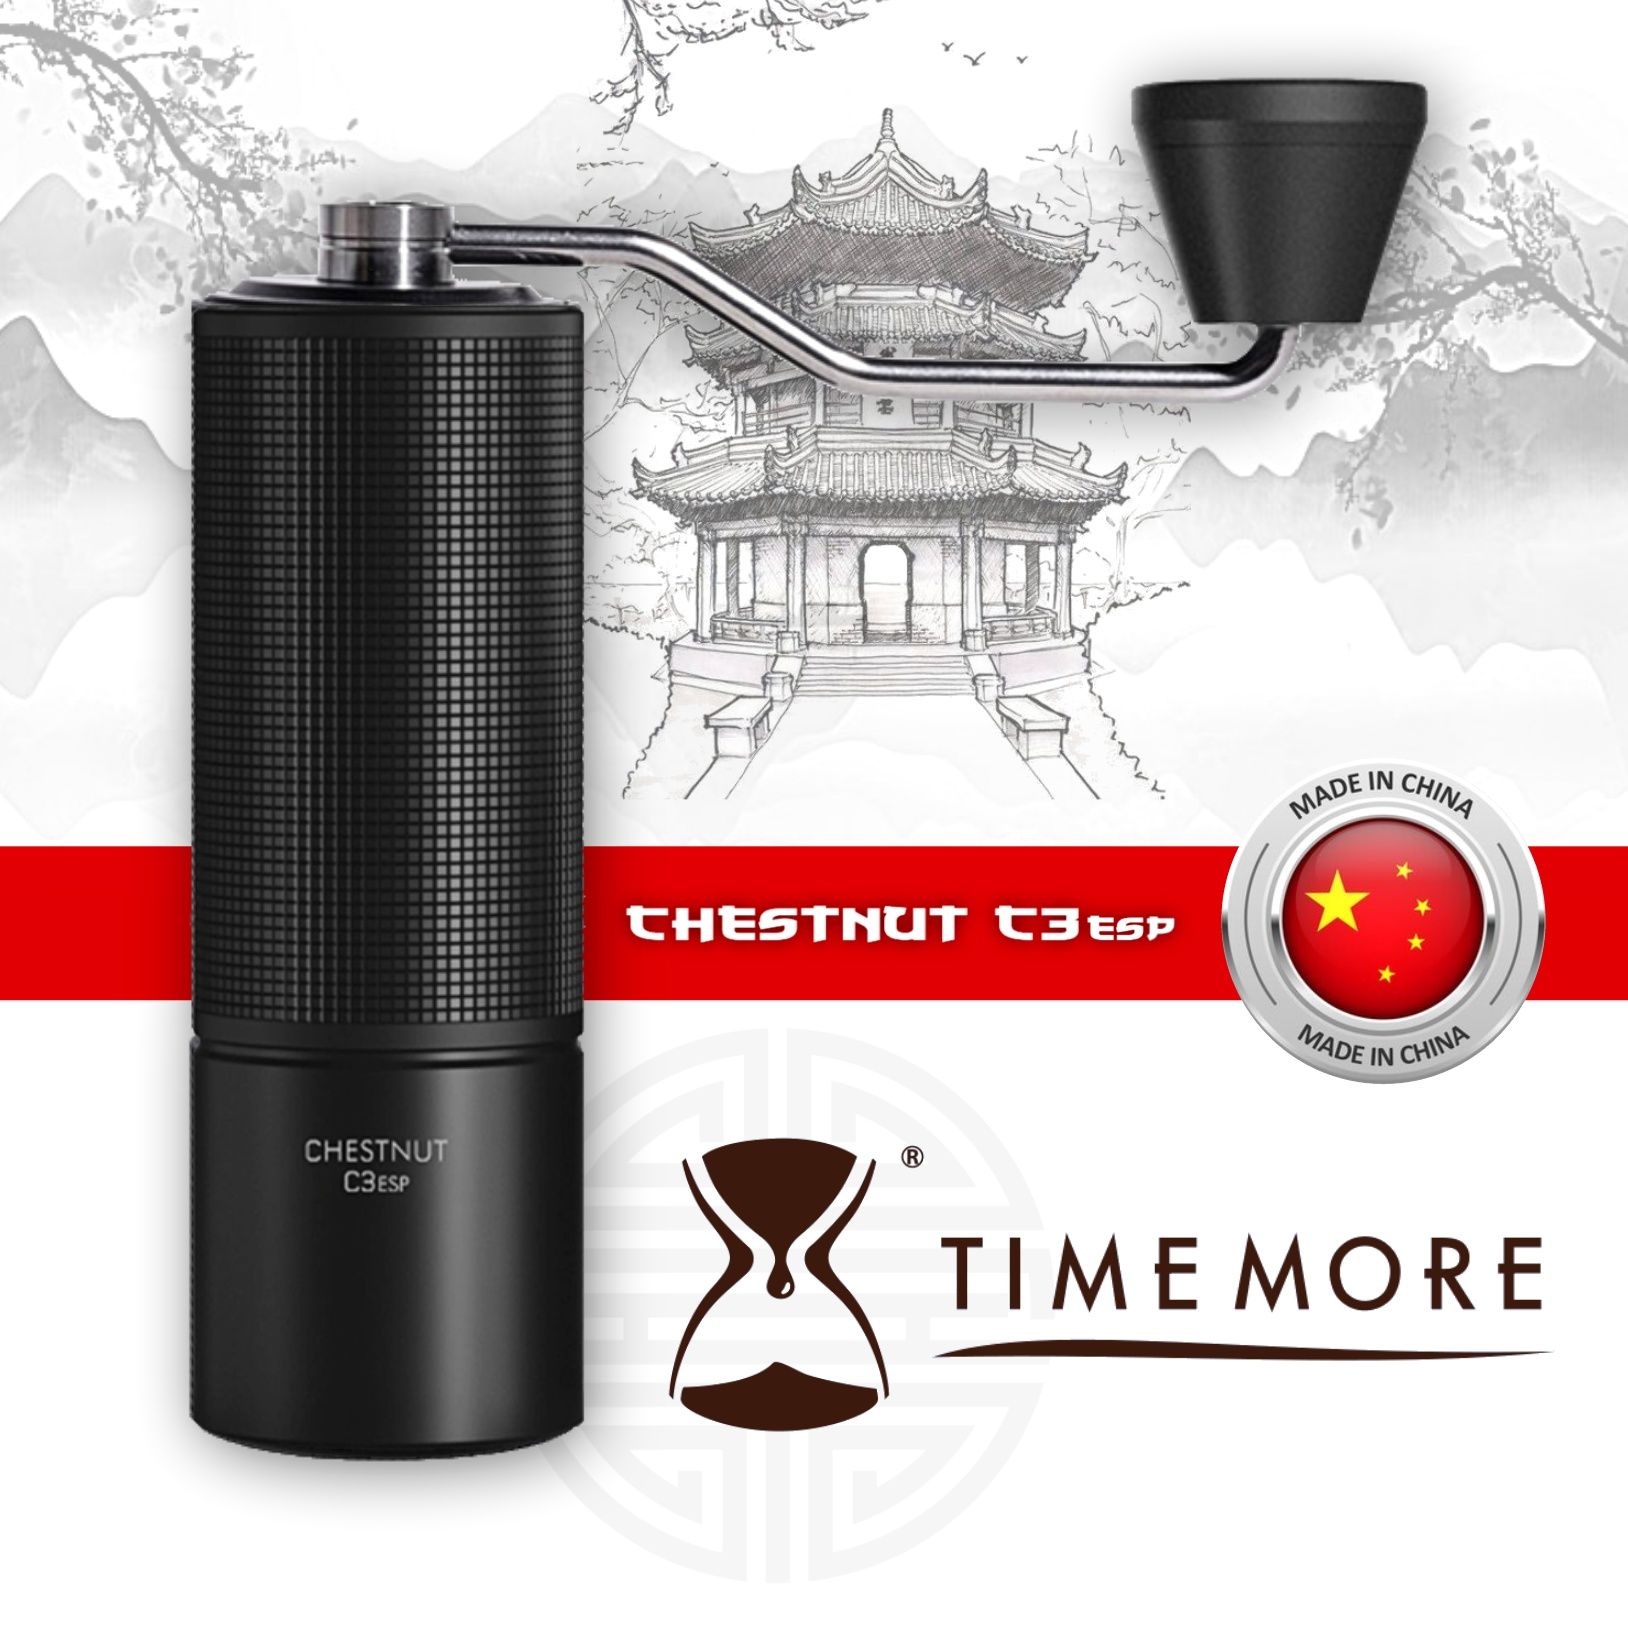 Rasnita cafea Timemore Chestnut S3 / C3 ESP PRO / C3 ESP